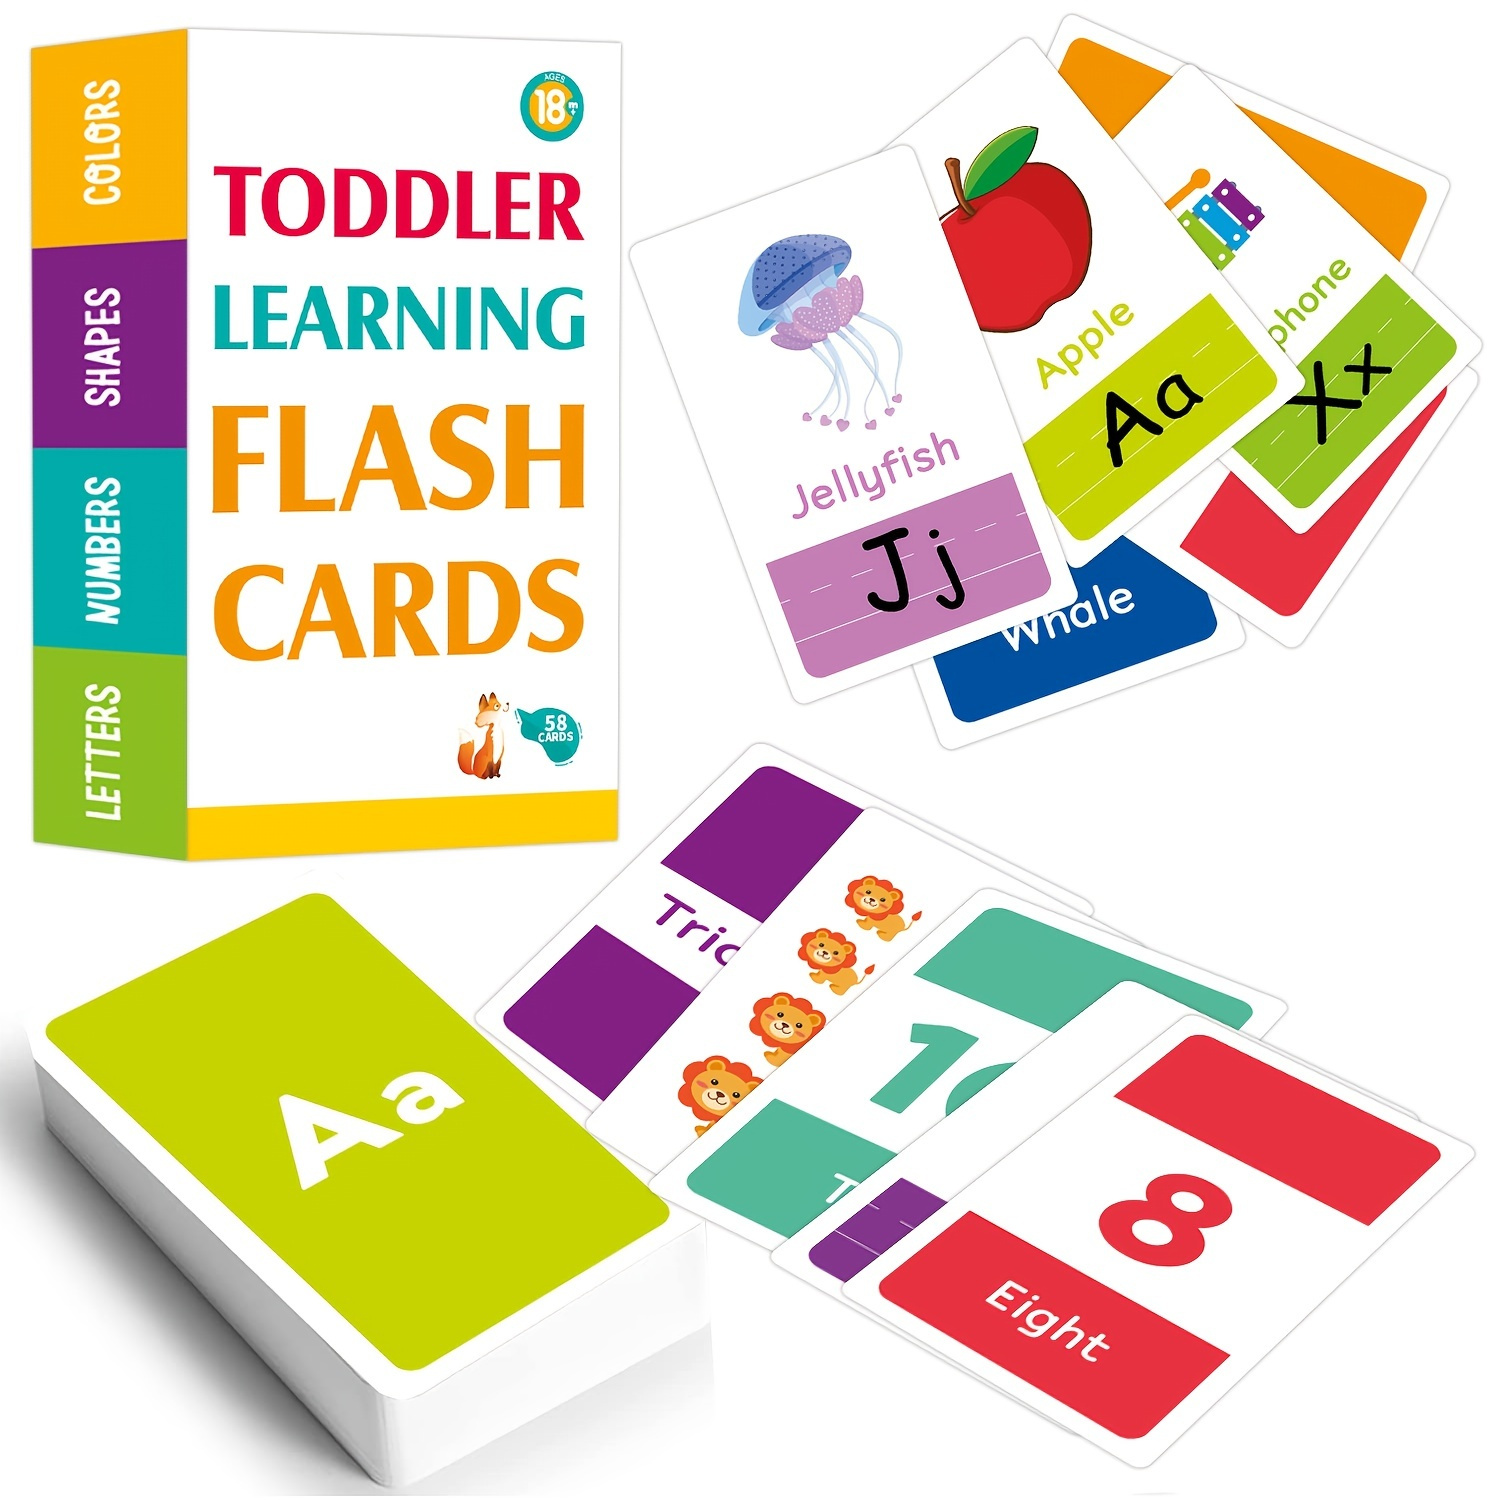 Les flash-cards : un excellent outil pour apprendre en s'amusant